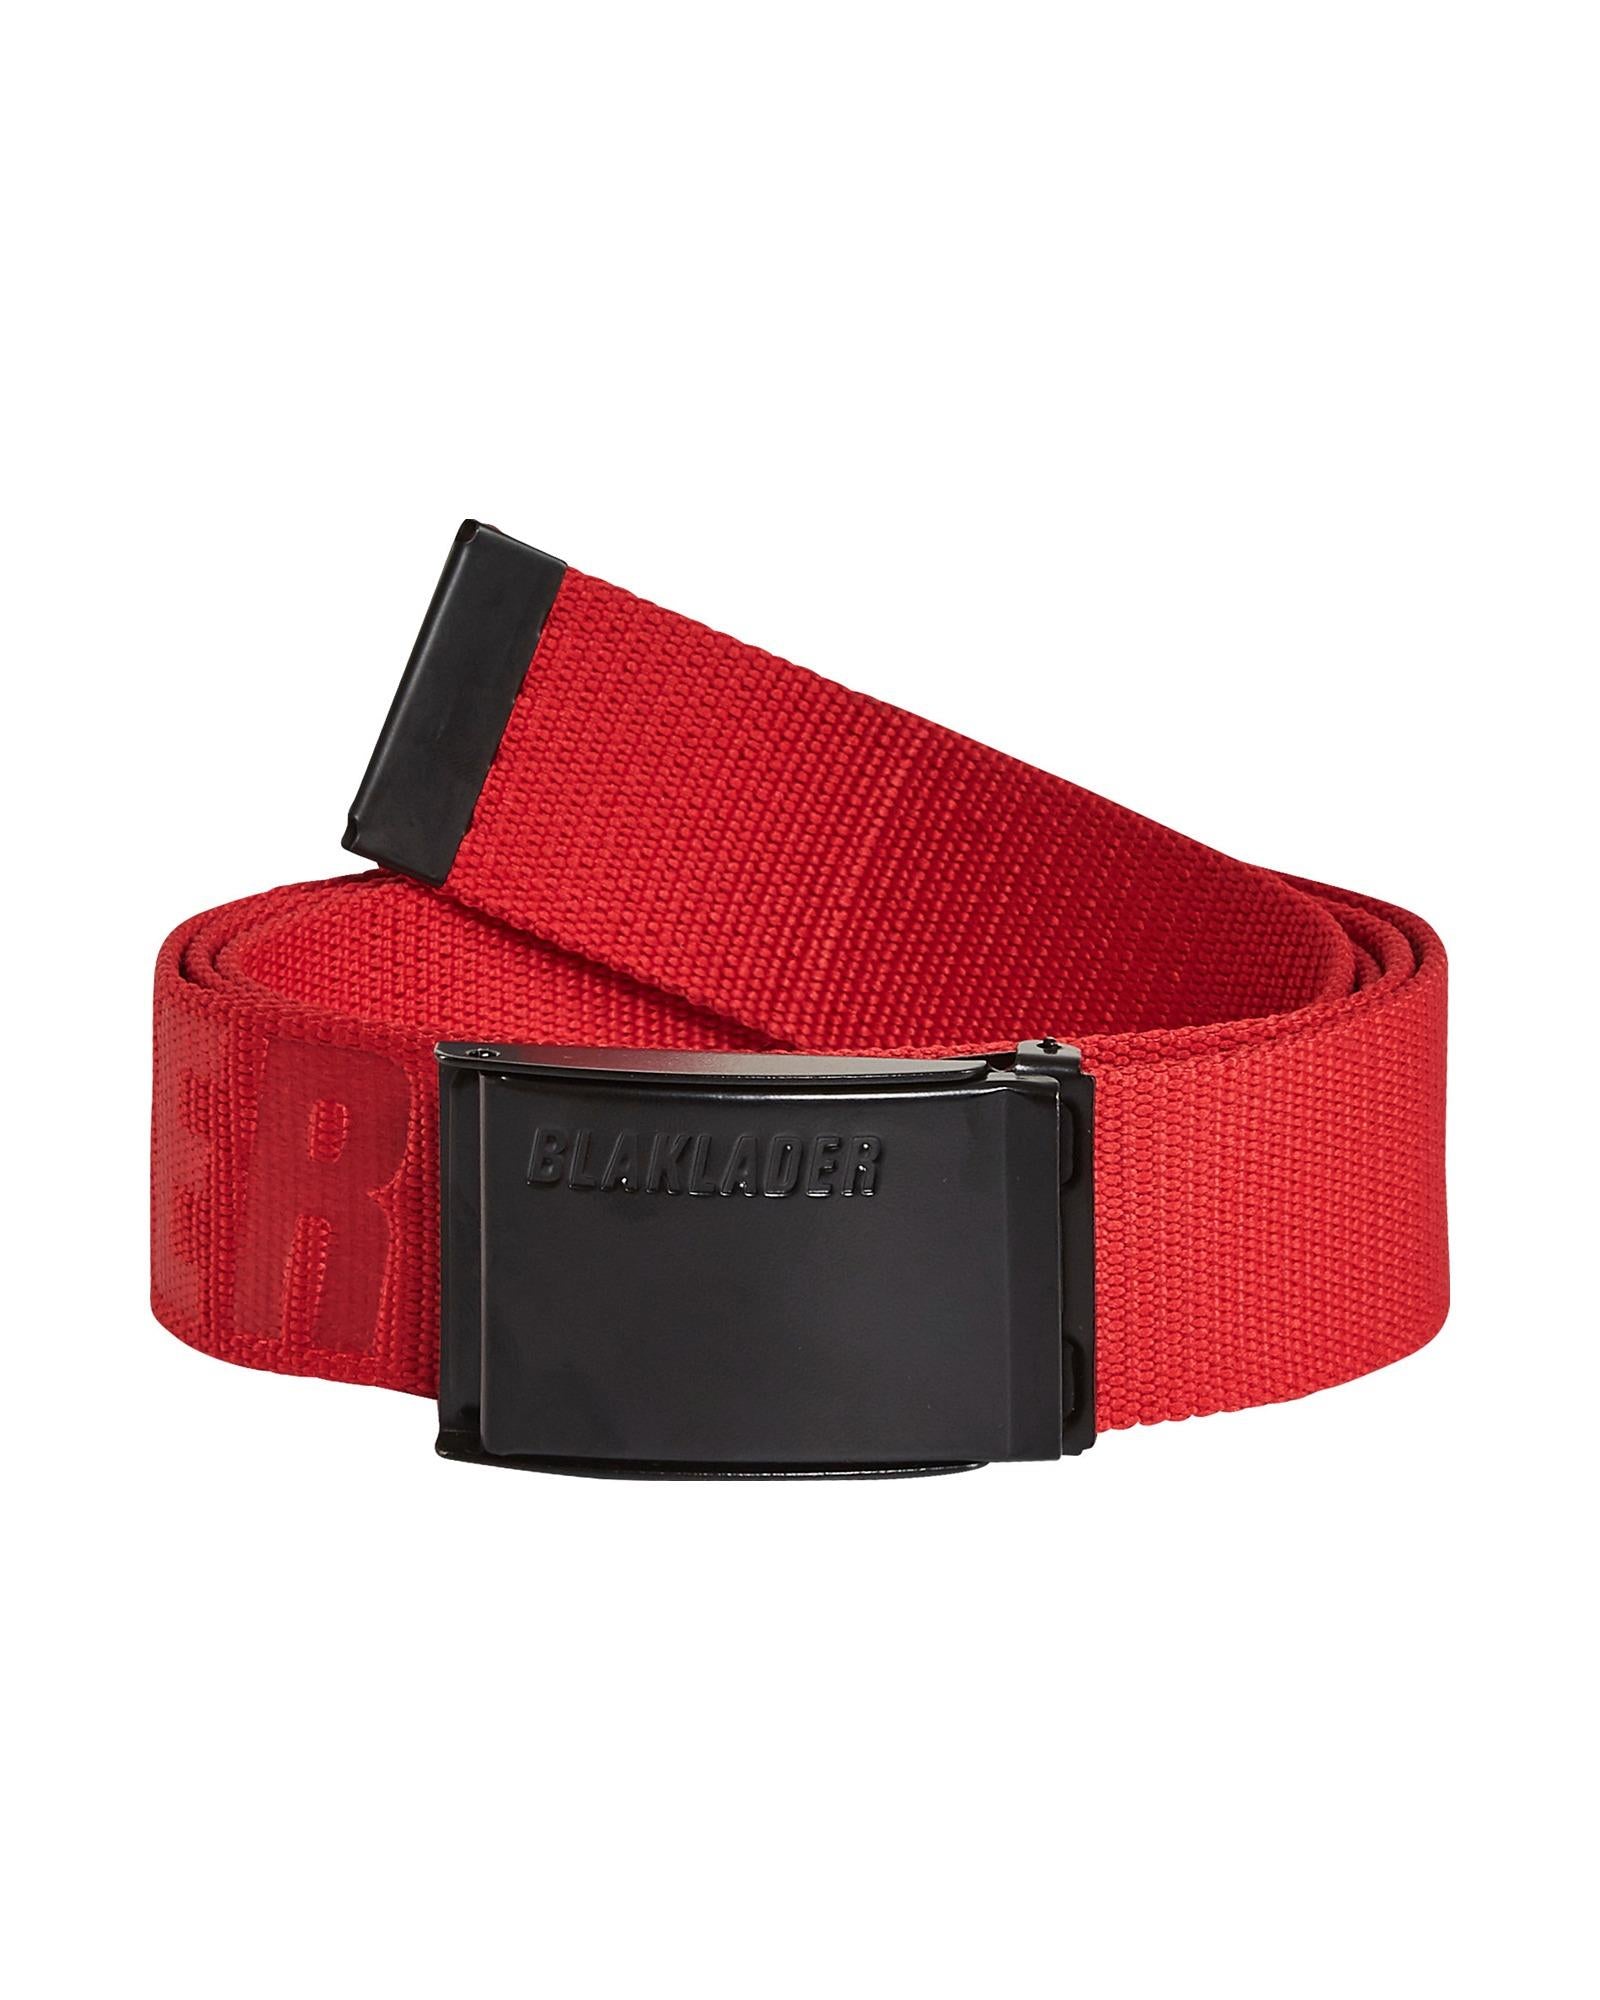 Blaklader red textile adjustable belt with metal buckle #4034